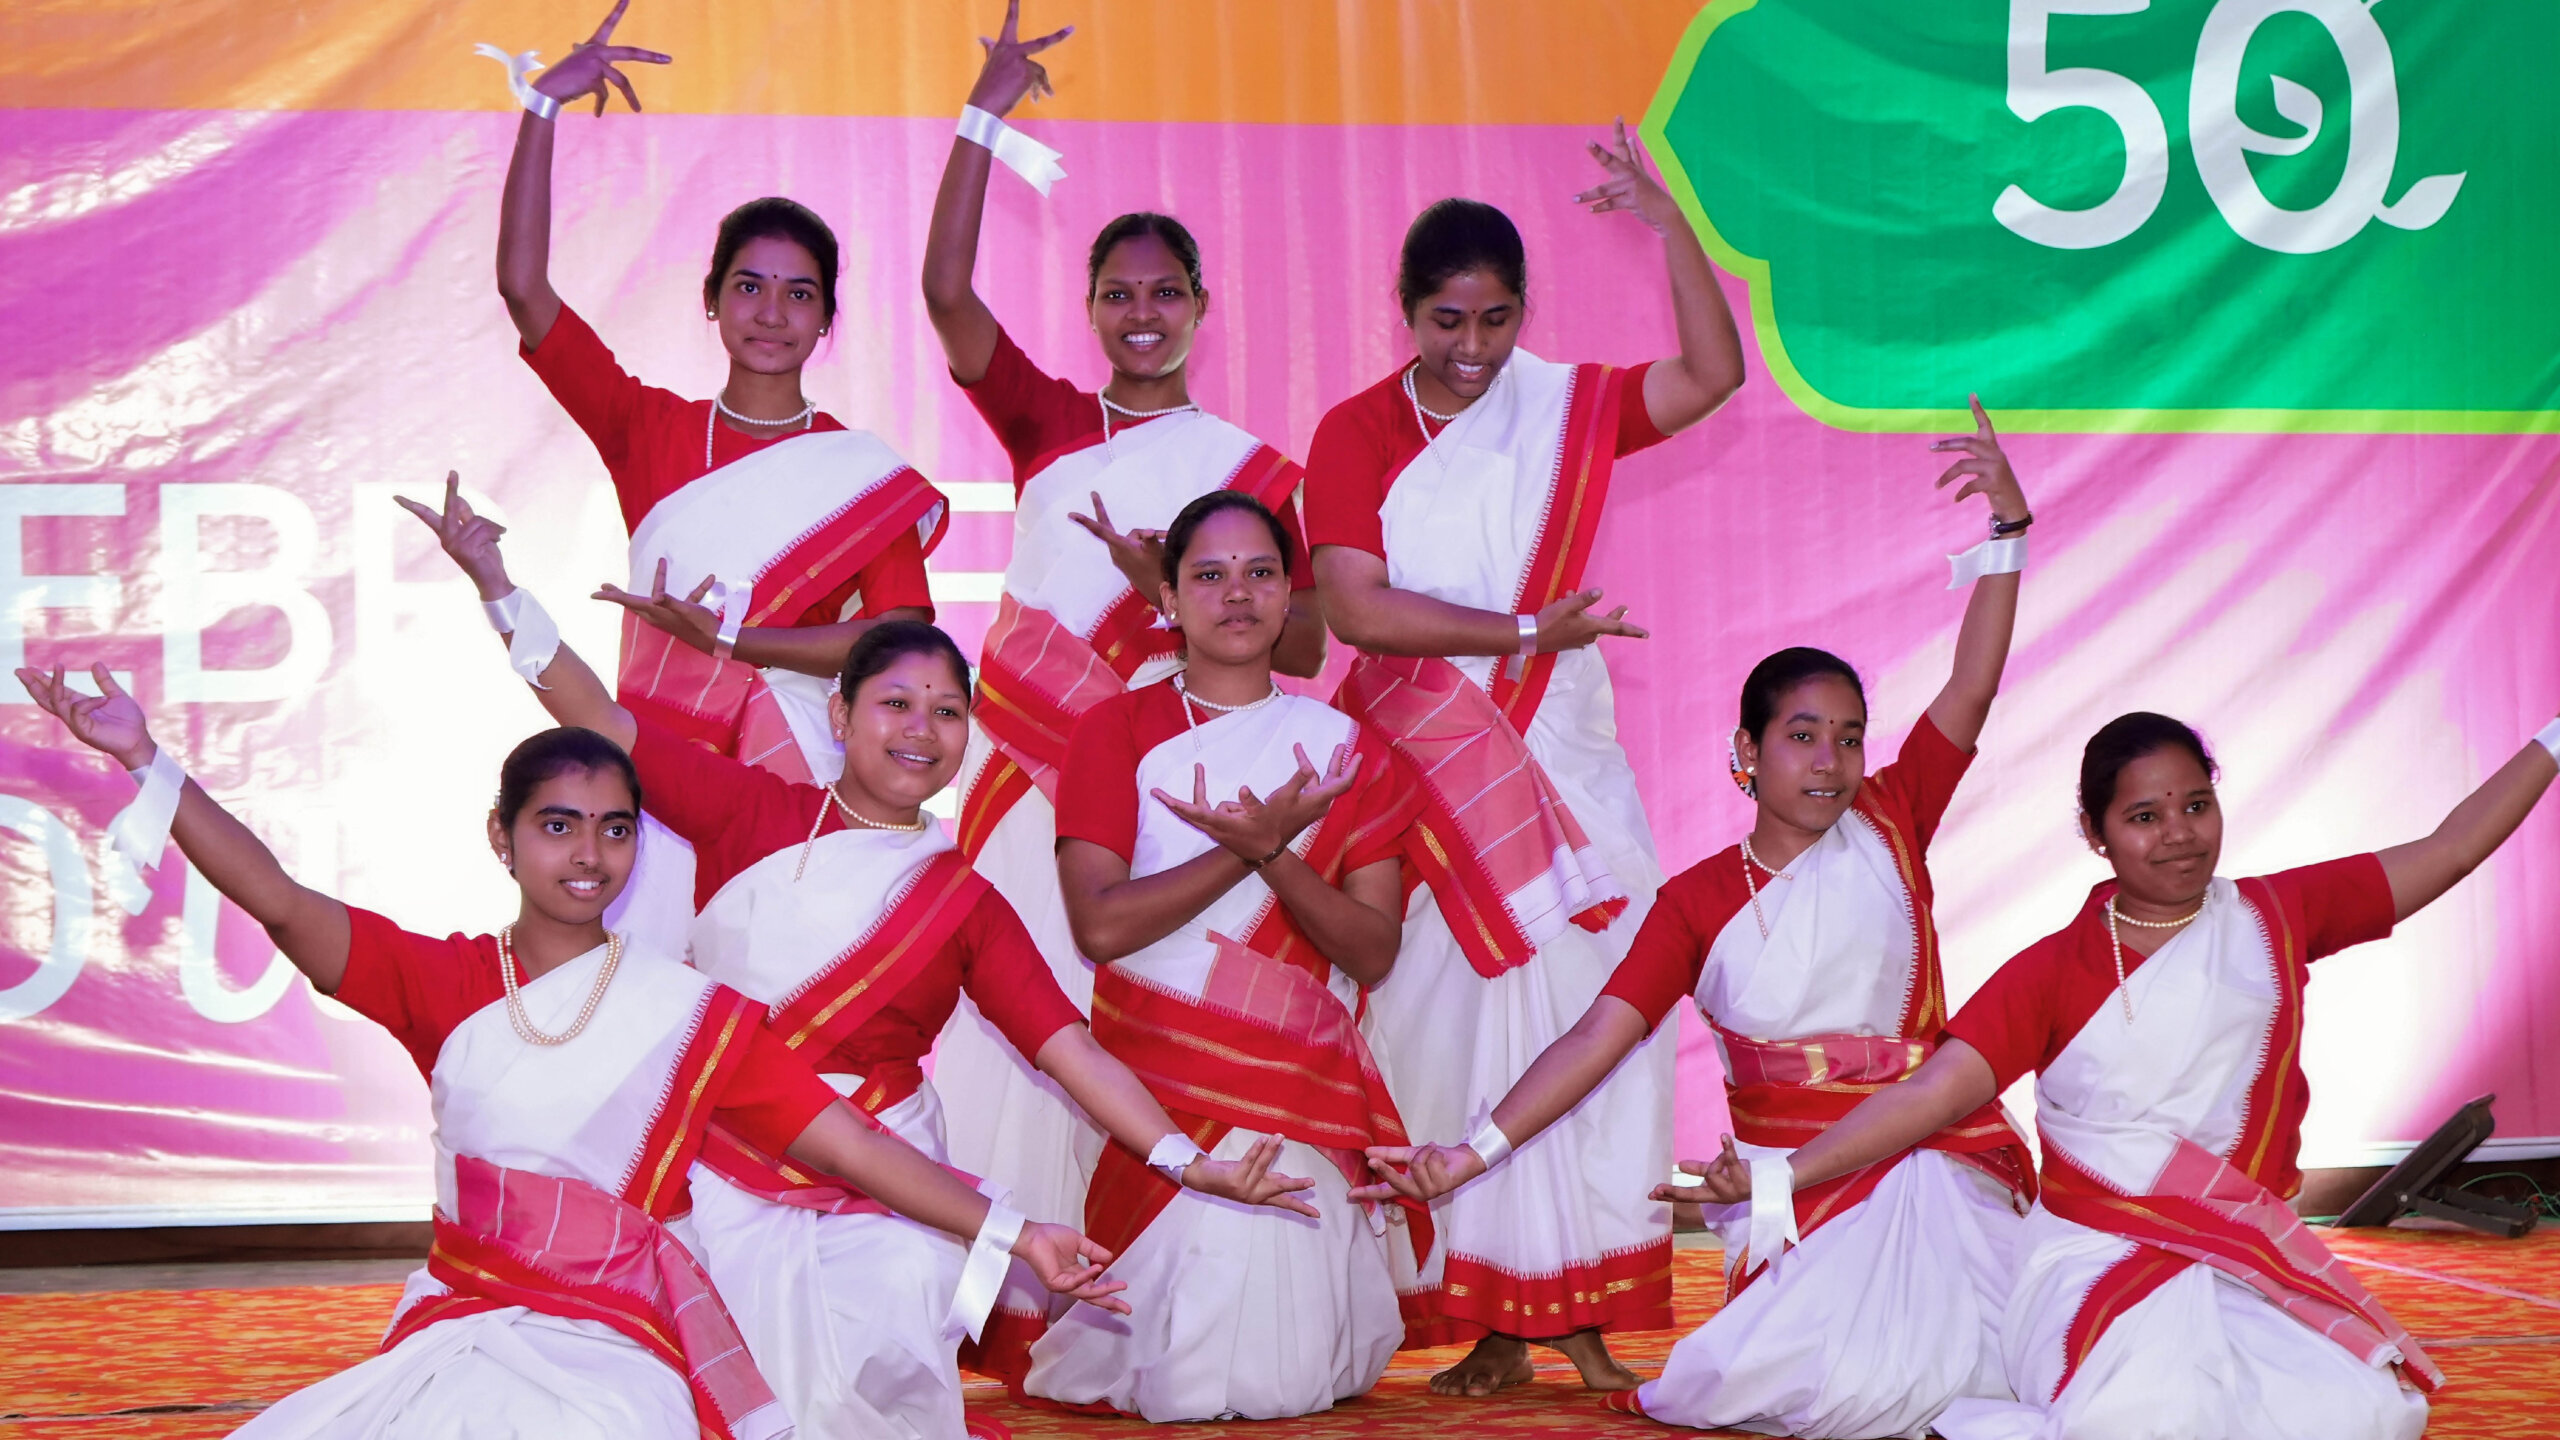 Gruppenfoto von den Tänzerinnen der Jubiläums Zeremonie mit Jubiläums-Banner von HOPE, Human Organisation for Pioneering in Education im Hintergrund.